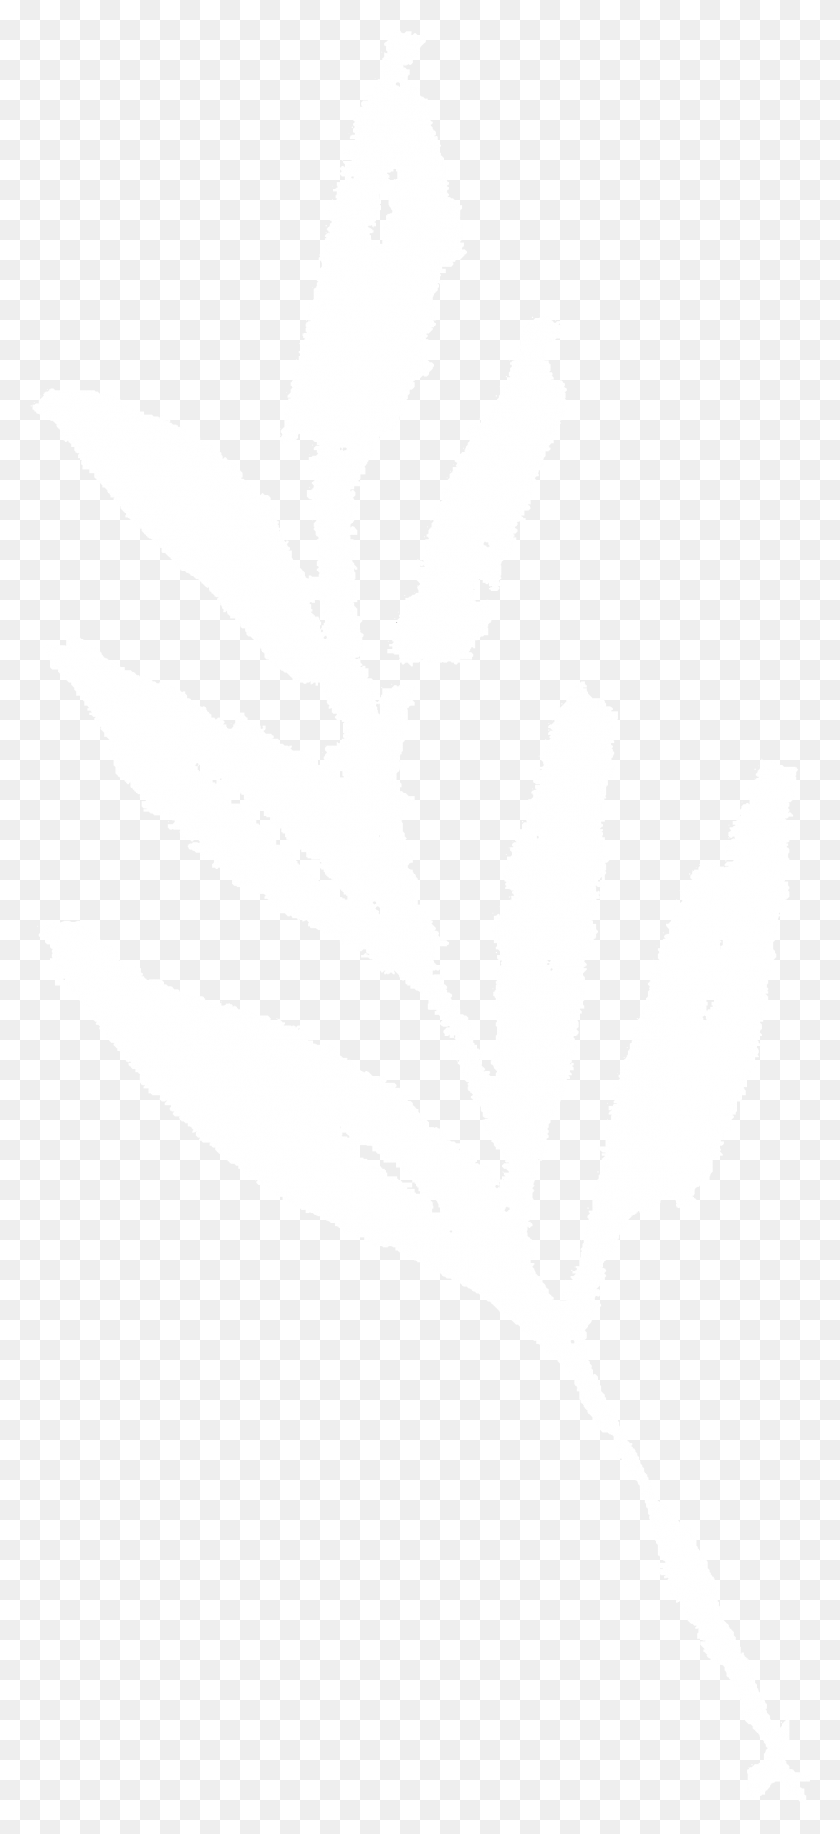 1251x2846 2 Логотип Джона Хопкинса Белый, Лист, Растение, Трафарет Hd Png Скачать